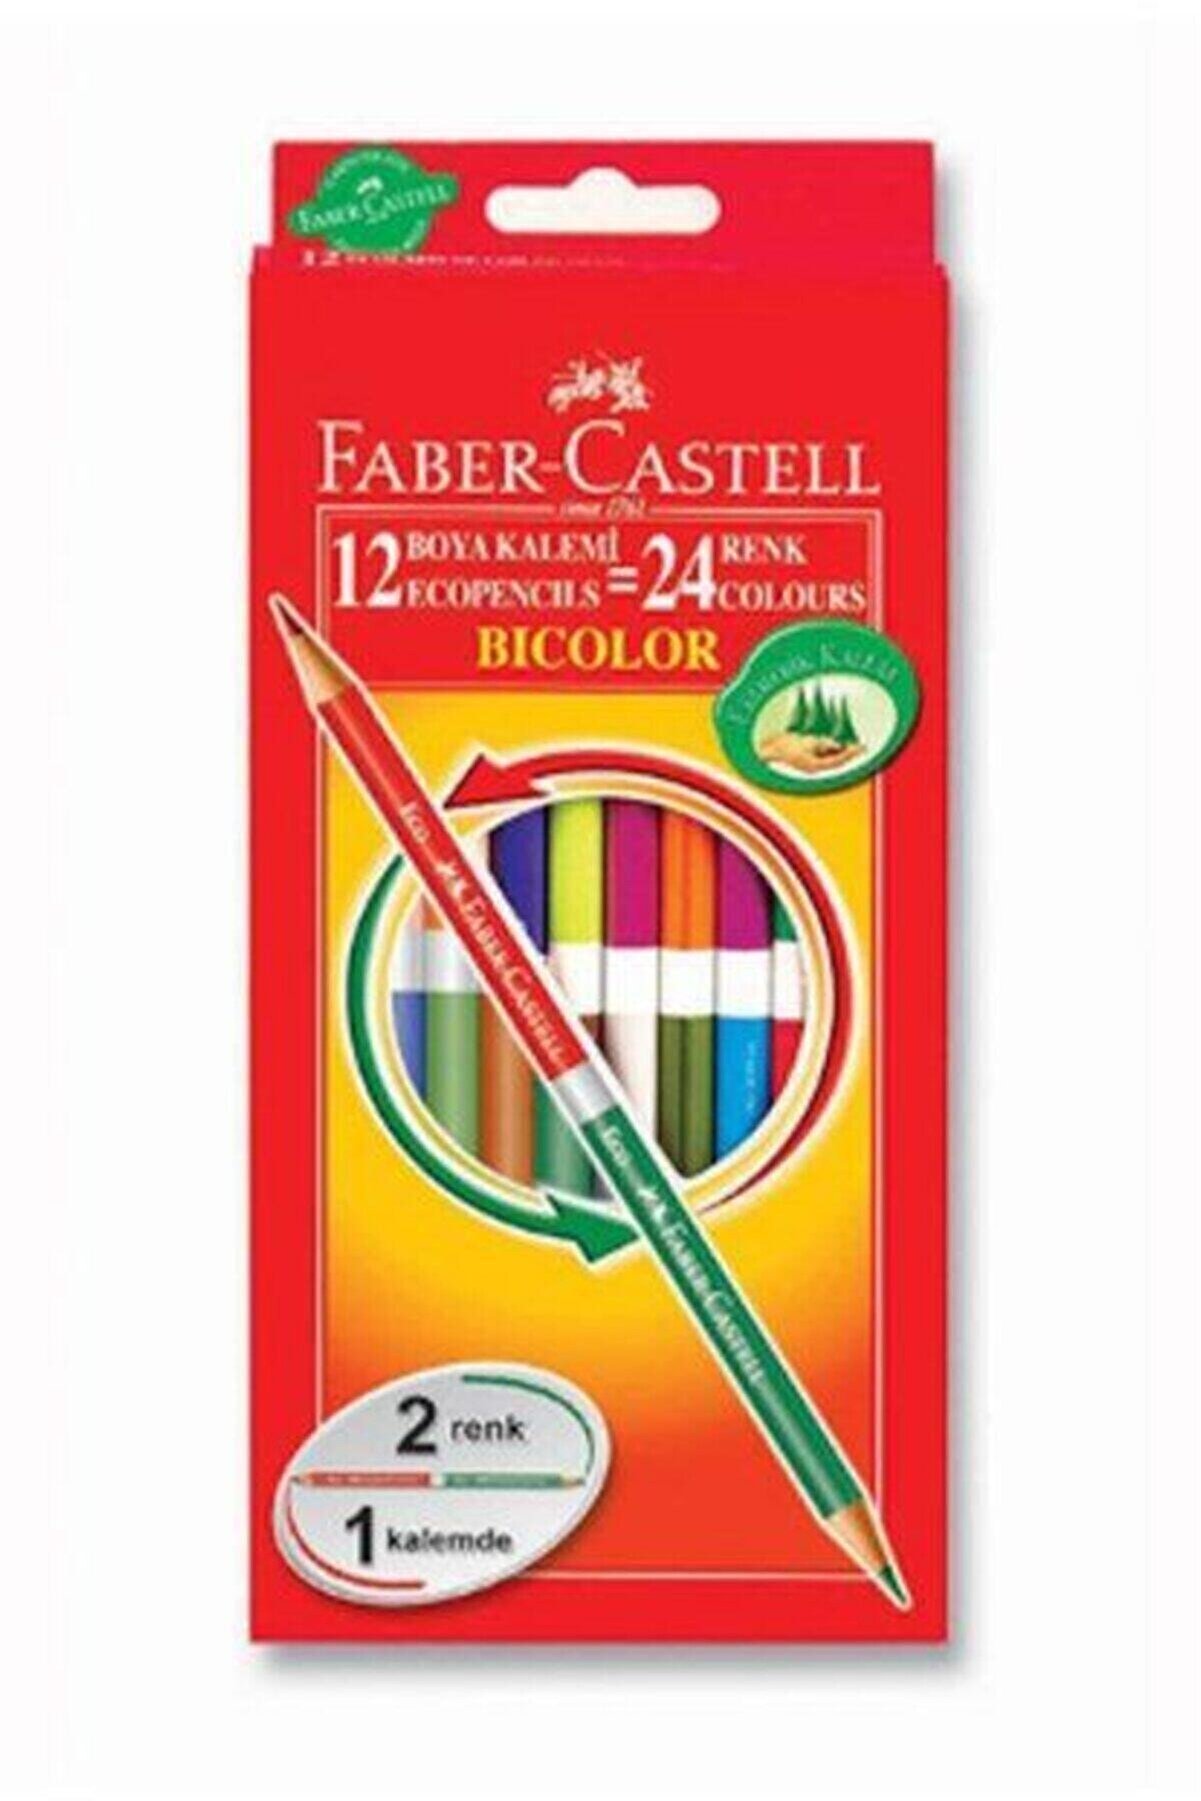 Faber Castell Bicolor Kuru Boya 24 Renk 1/1 5171120612